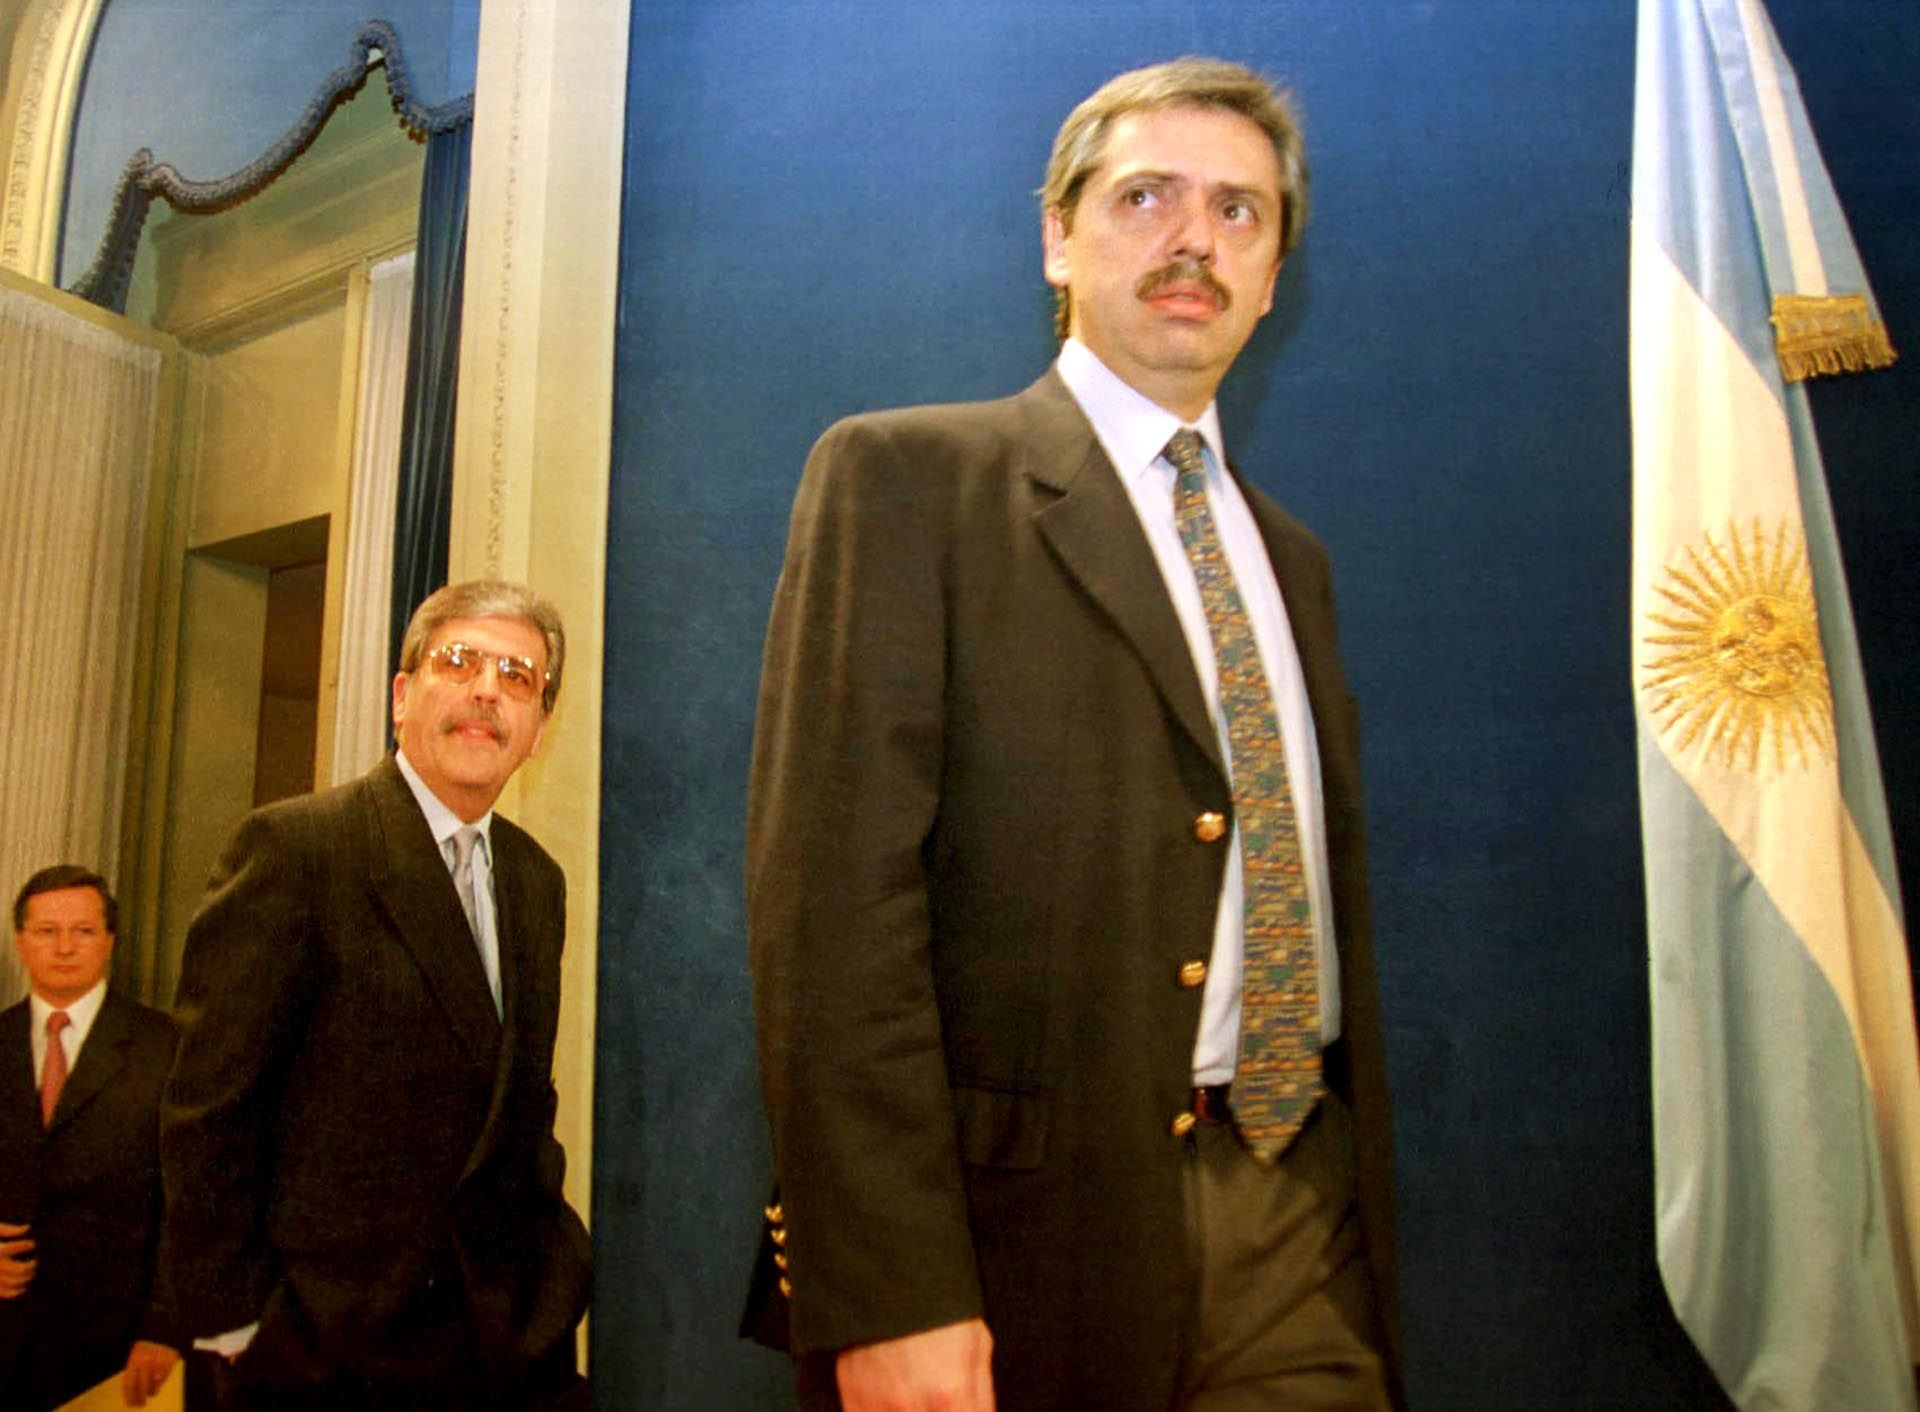  El 19 de noviembre de 2003, con Julio De Vido, infomaron la decisión de intervenir el Correo Argentino, en ese momento en manos del Grupo SOCMA de la familia Macri. 